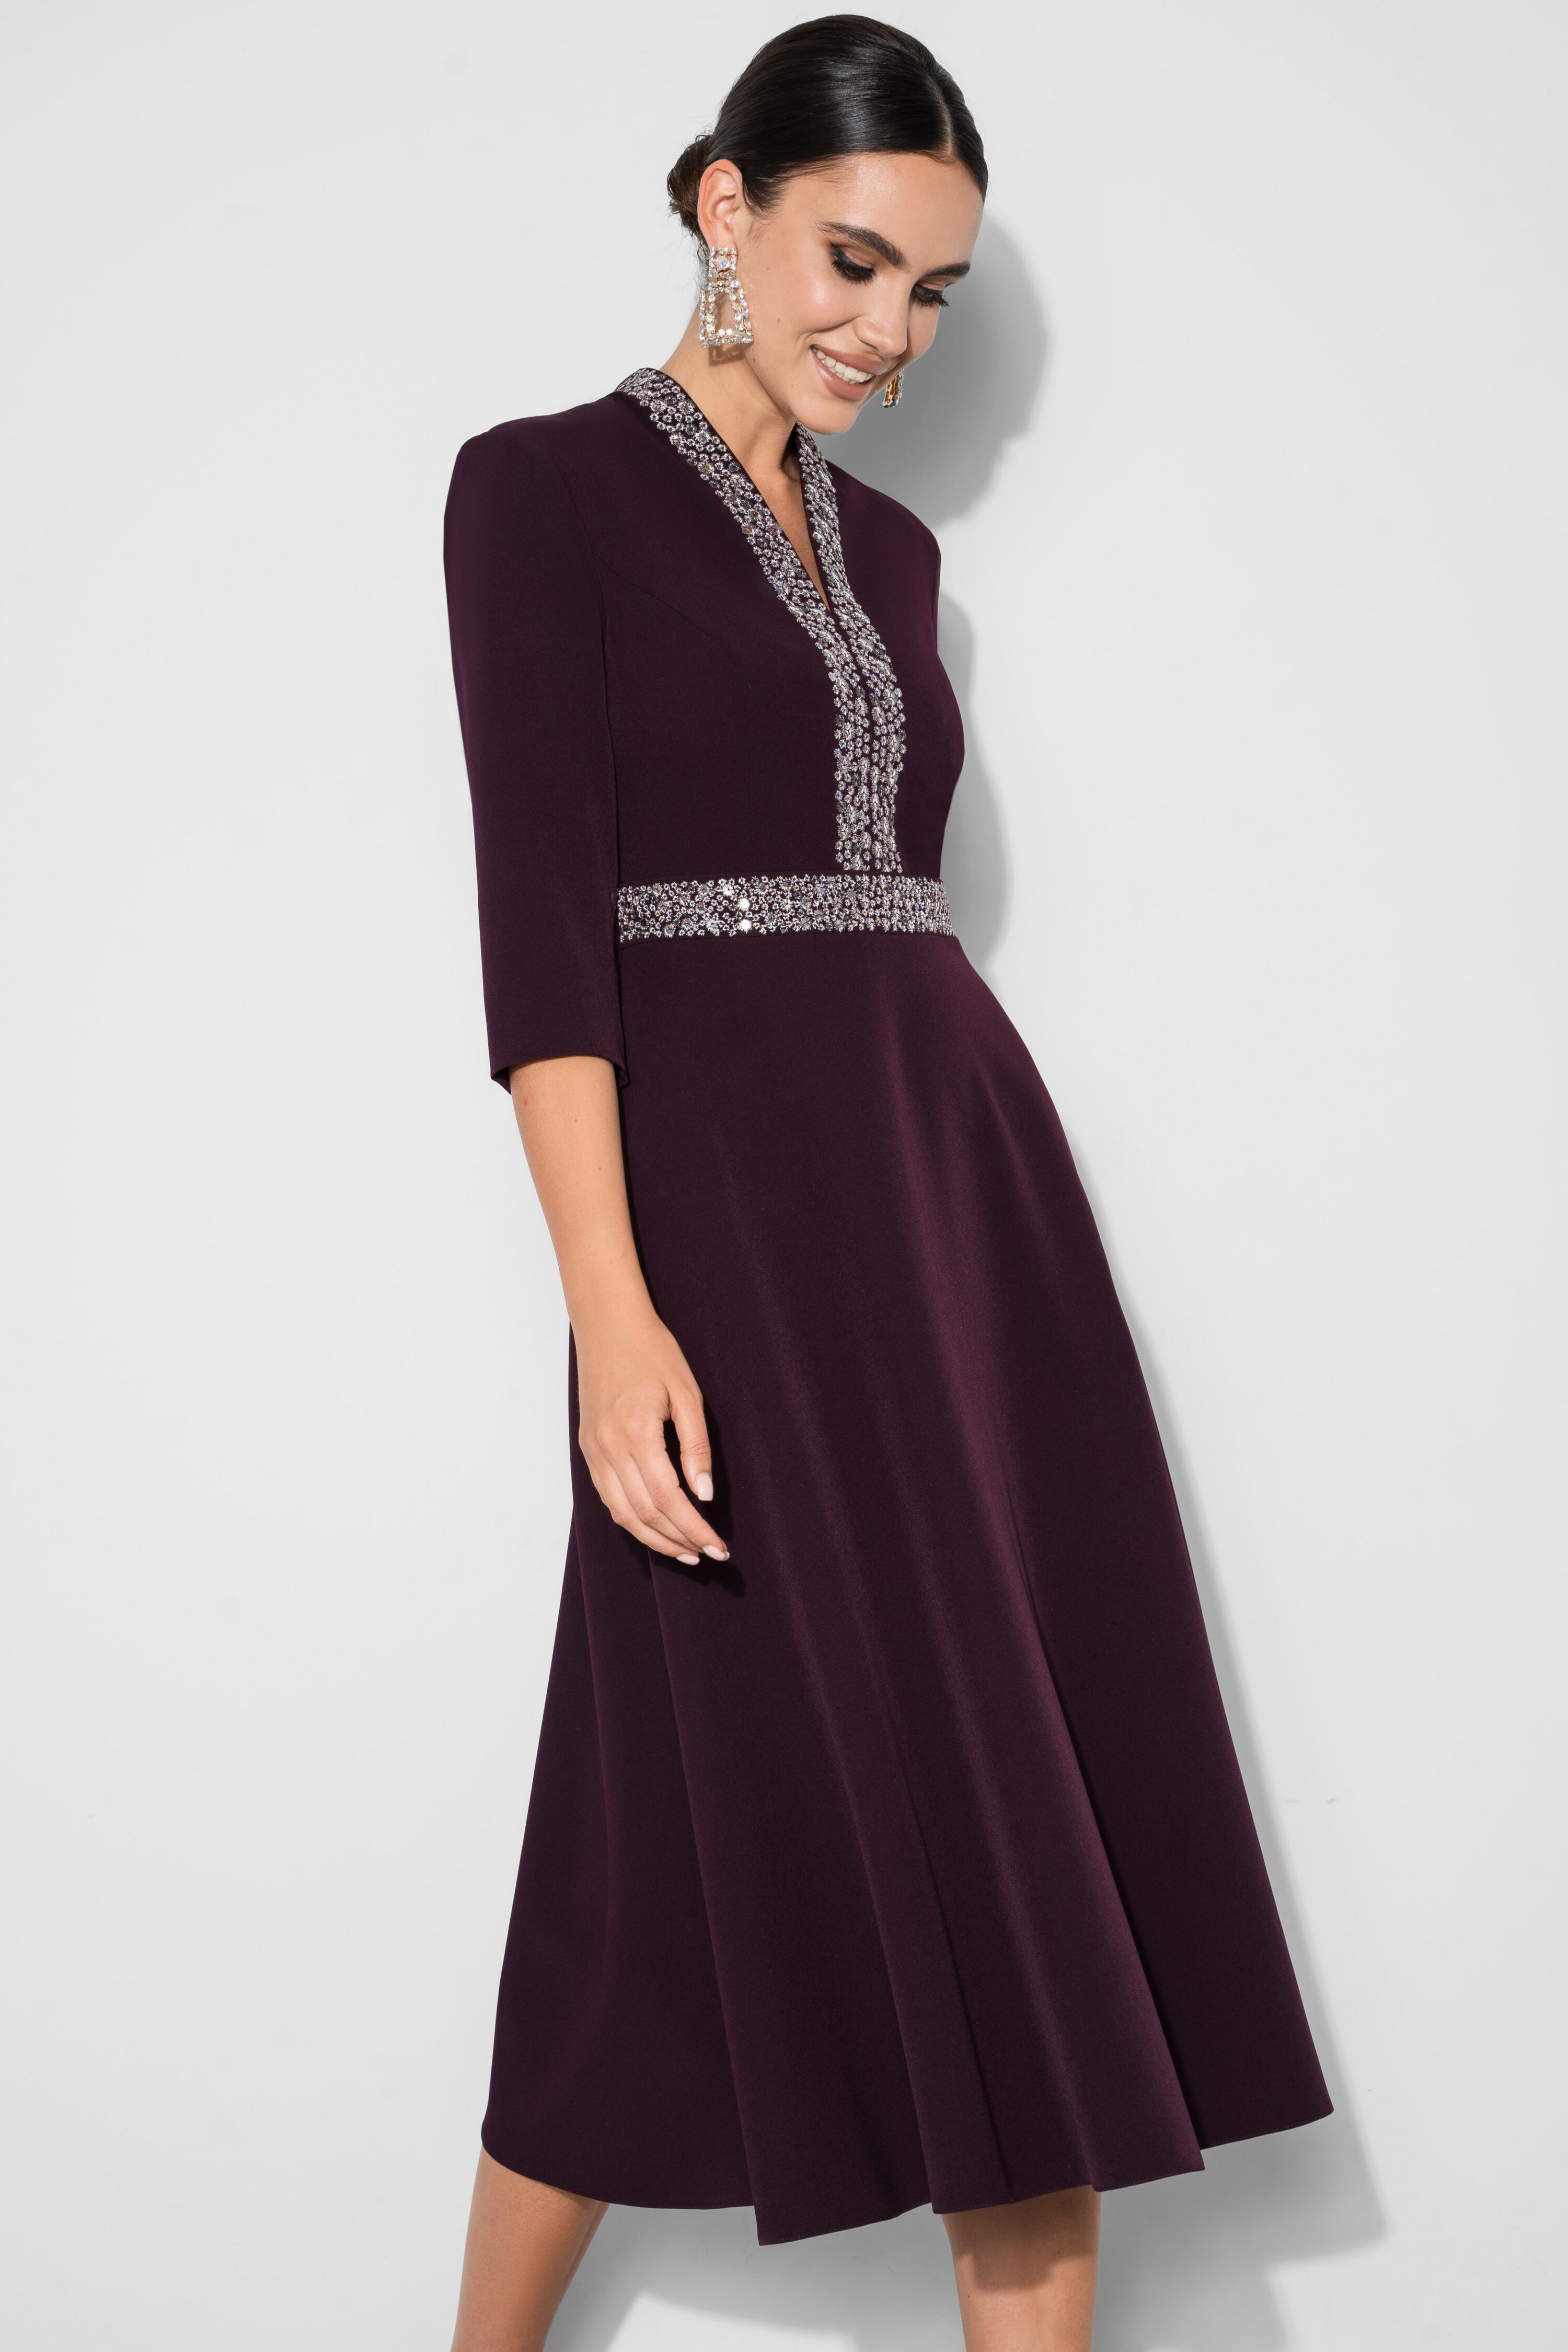 Купить платье URS 22-974-1 фиолетовое с вышивкой